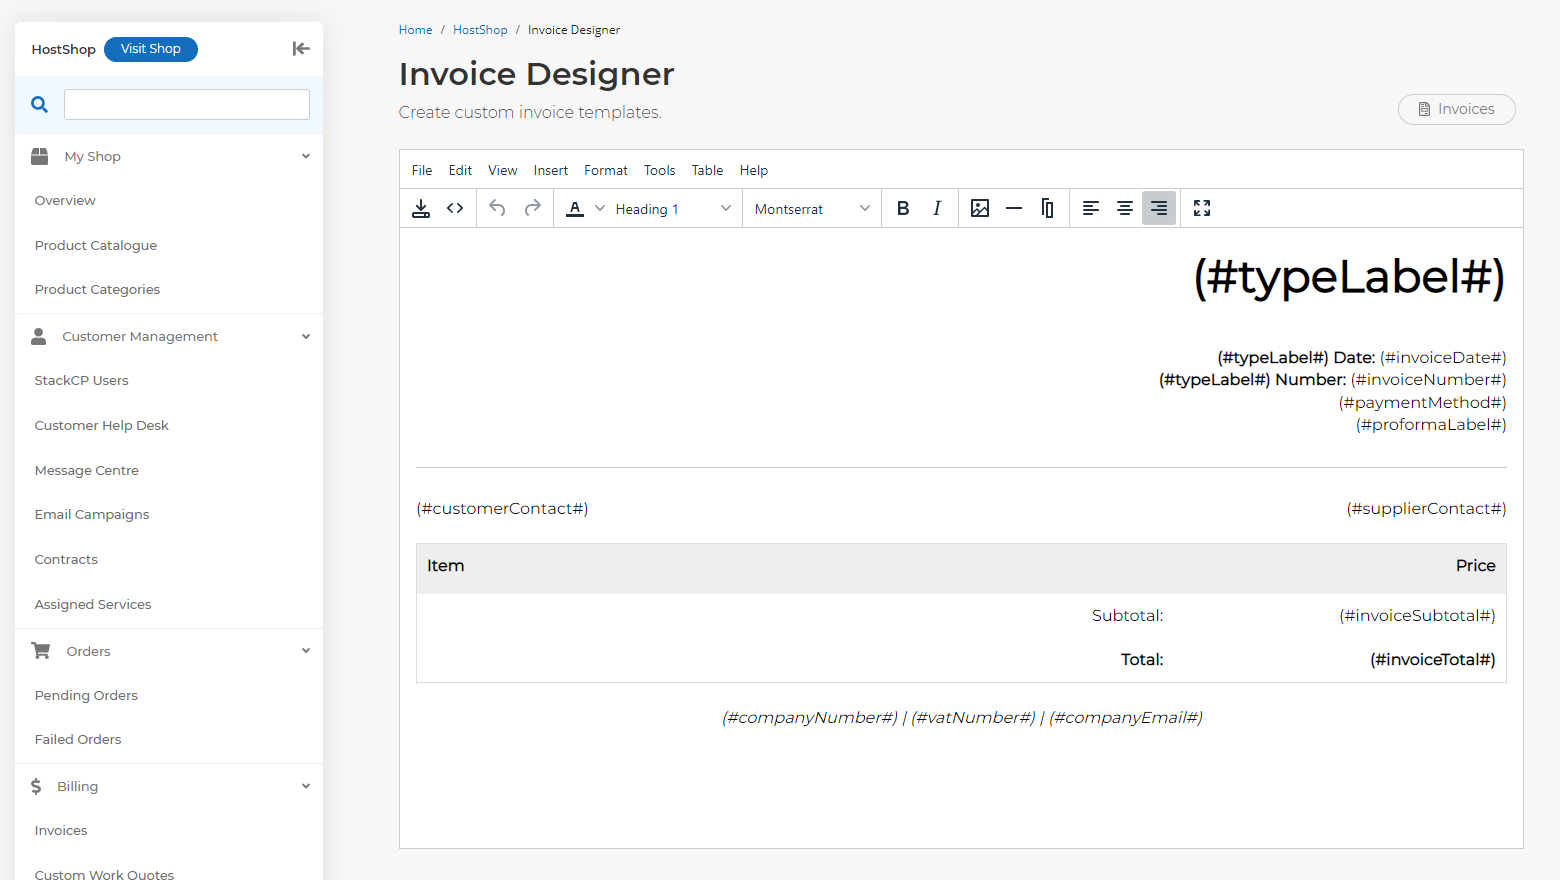 HostShop Invoice Designer page